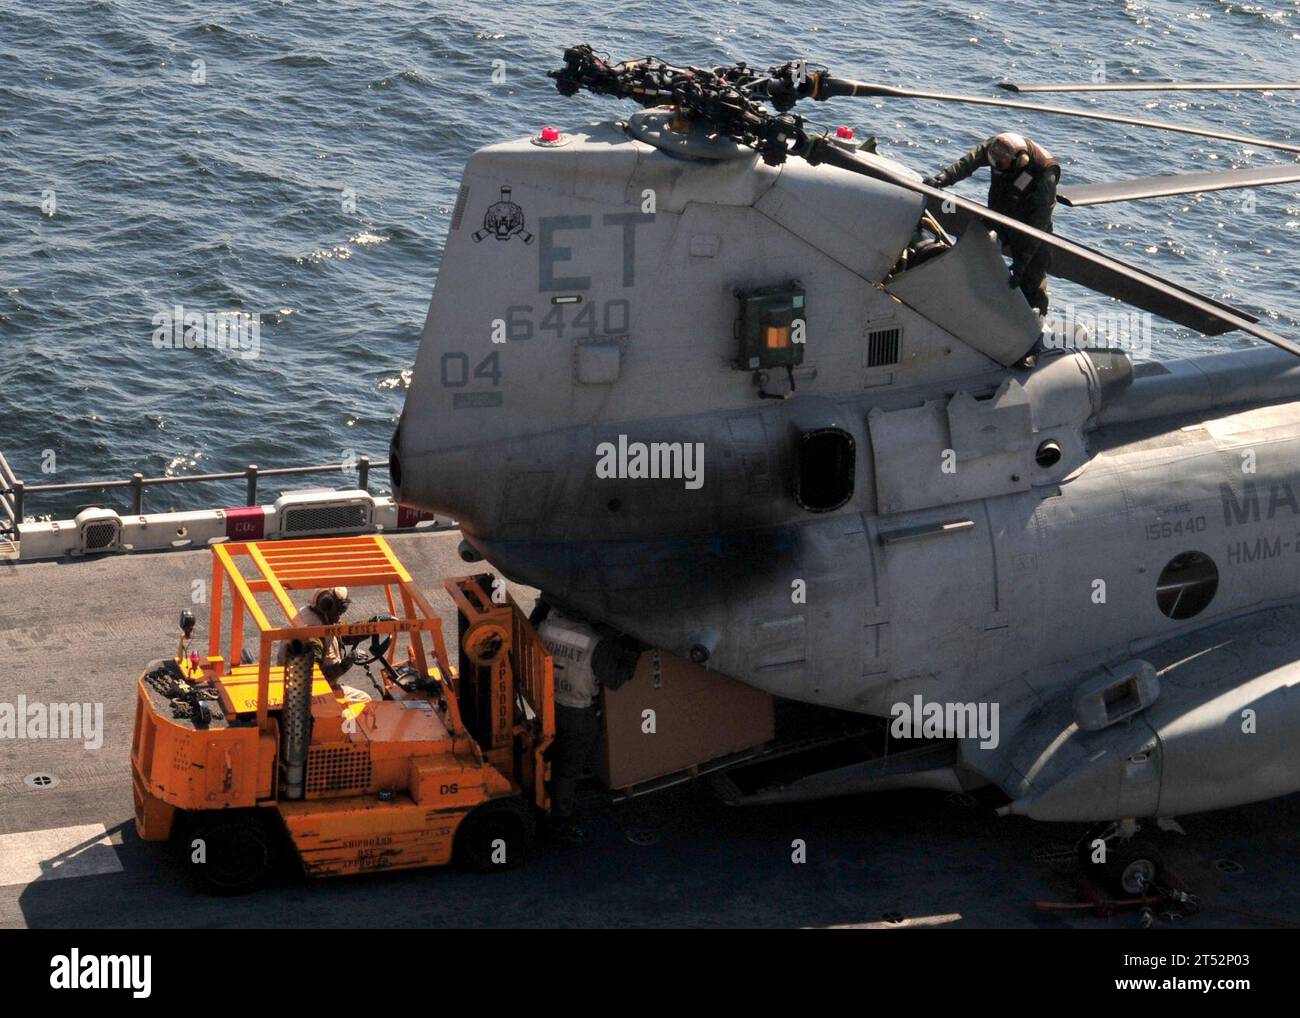 1103295538K-180 PACIFIC OCEAN (29. März 2011) Marines laden humanitäre Hilfsgüter in einen CH-46E Sea Knight Hubschrauber auf dem Flugdeck des vorgelagerten amphibischen Angriffsschiffs USS Essex (LHD 2). Essex arbeitet mit der 31st Marine Expeditionary Unit (31st MEU) vor der Küste von Kesennuma im Nordosten Japans, um die Operation Tomodachi zu unterstützen. Marineblau Stockfoto